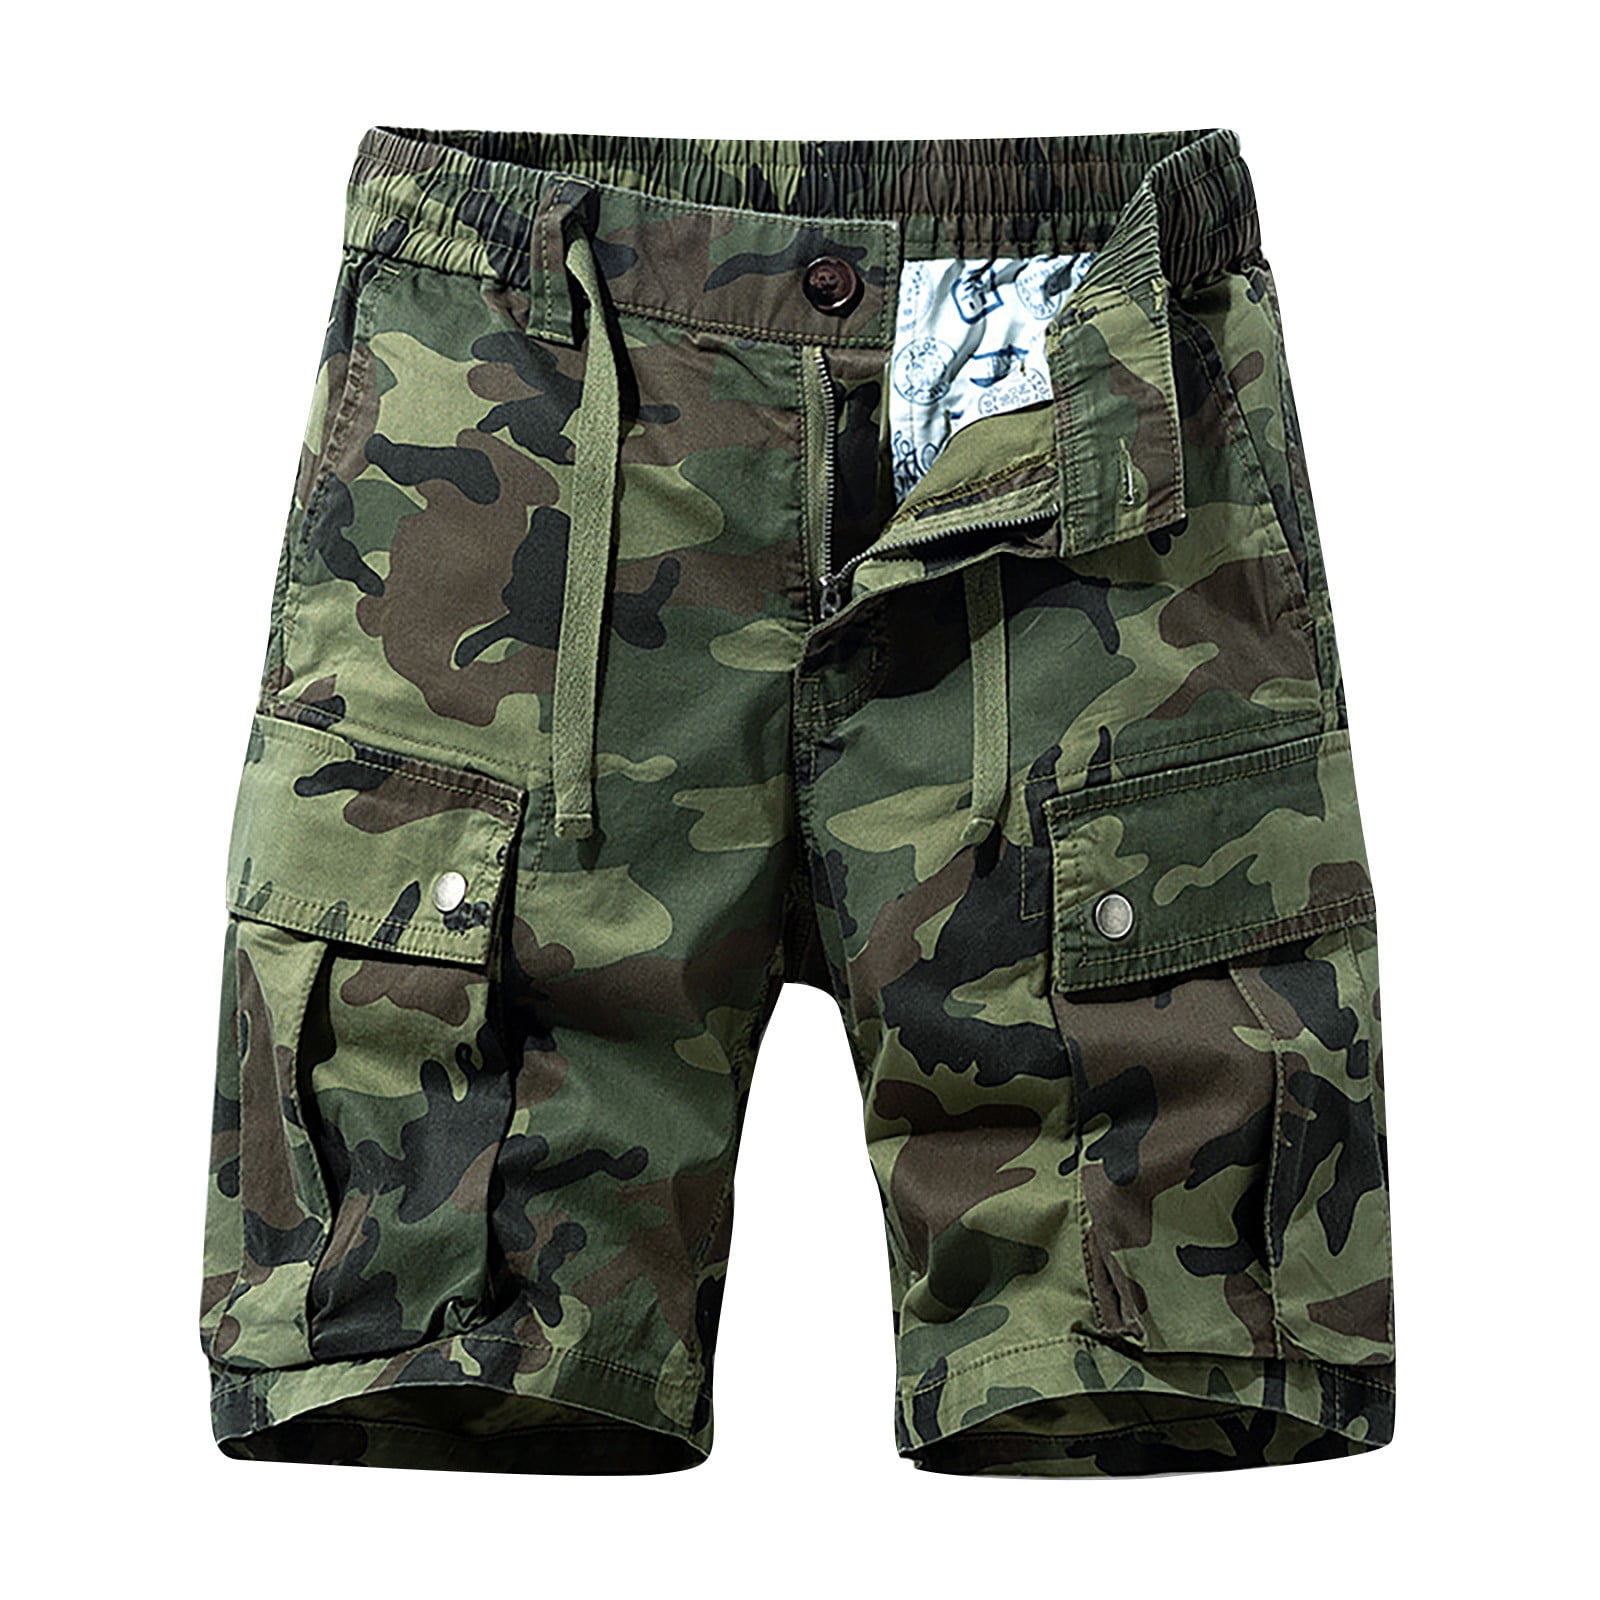 Yuwull Men's Camouflage Shorts Hiking Cargo Shorts Quick Dry 